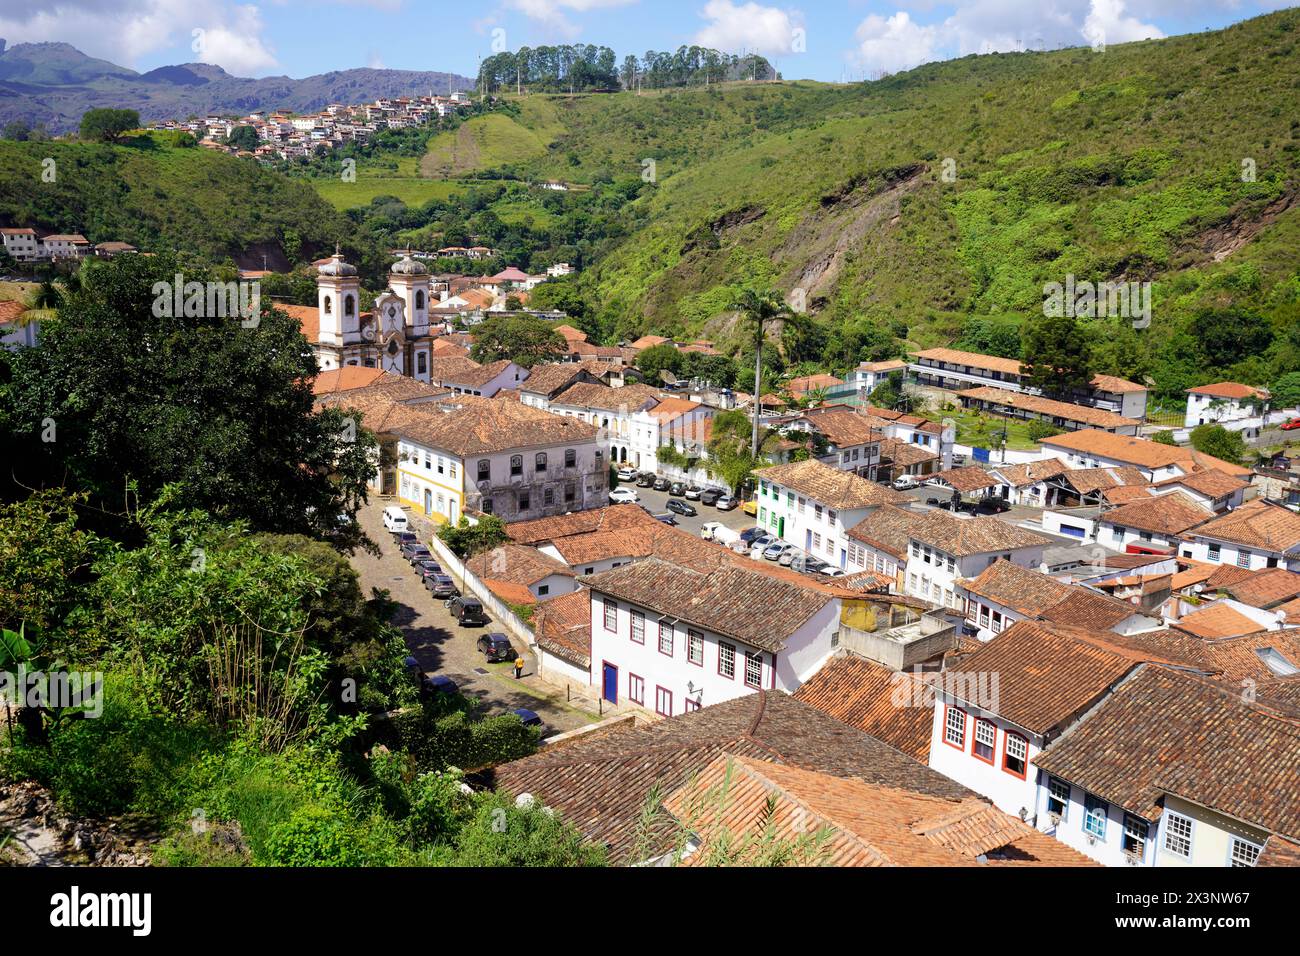 Ouro Preto, città storica patrimonio dell'umanità dell'UNESCO nello stato di Minas Gerais, Brasile. Vista panoramica dalla terrazza. Foto Stock